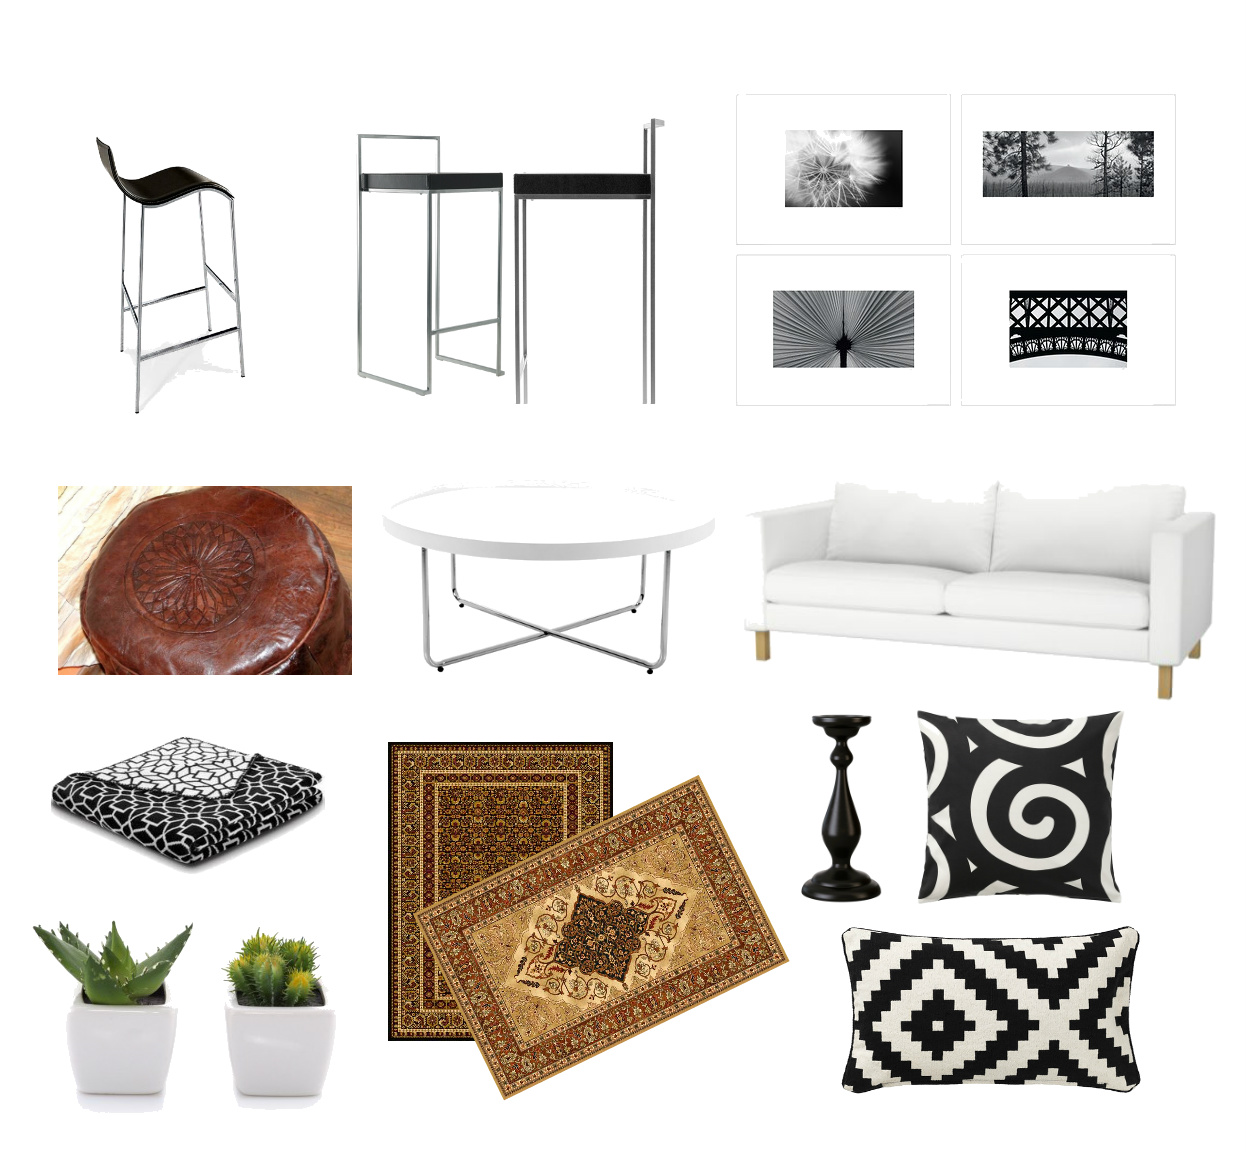 dizajnerskie hokery,czarne hokery,skórzana pufa,orientalna pufa,brązowa pufa,wełniane dywany,orientalne dywany,klasyczne dywany,nowoczesna biała sofa,sofa w tkaninie,okrągły stolik kawowy,nowoczesny stolik kawowy,czarno-białe dekoracje,czarno-białe poduszki,czarno-białe koce i pledy,czarno-białe grafiki,nowoczesne grafiki,czarny świecznik,kaktusy,białe doniczki,skandynawskie dekoracje